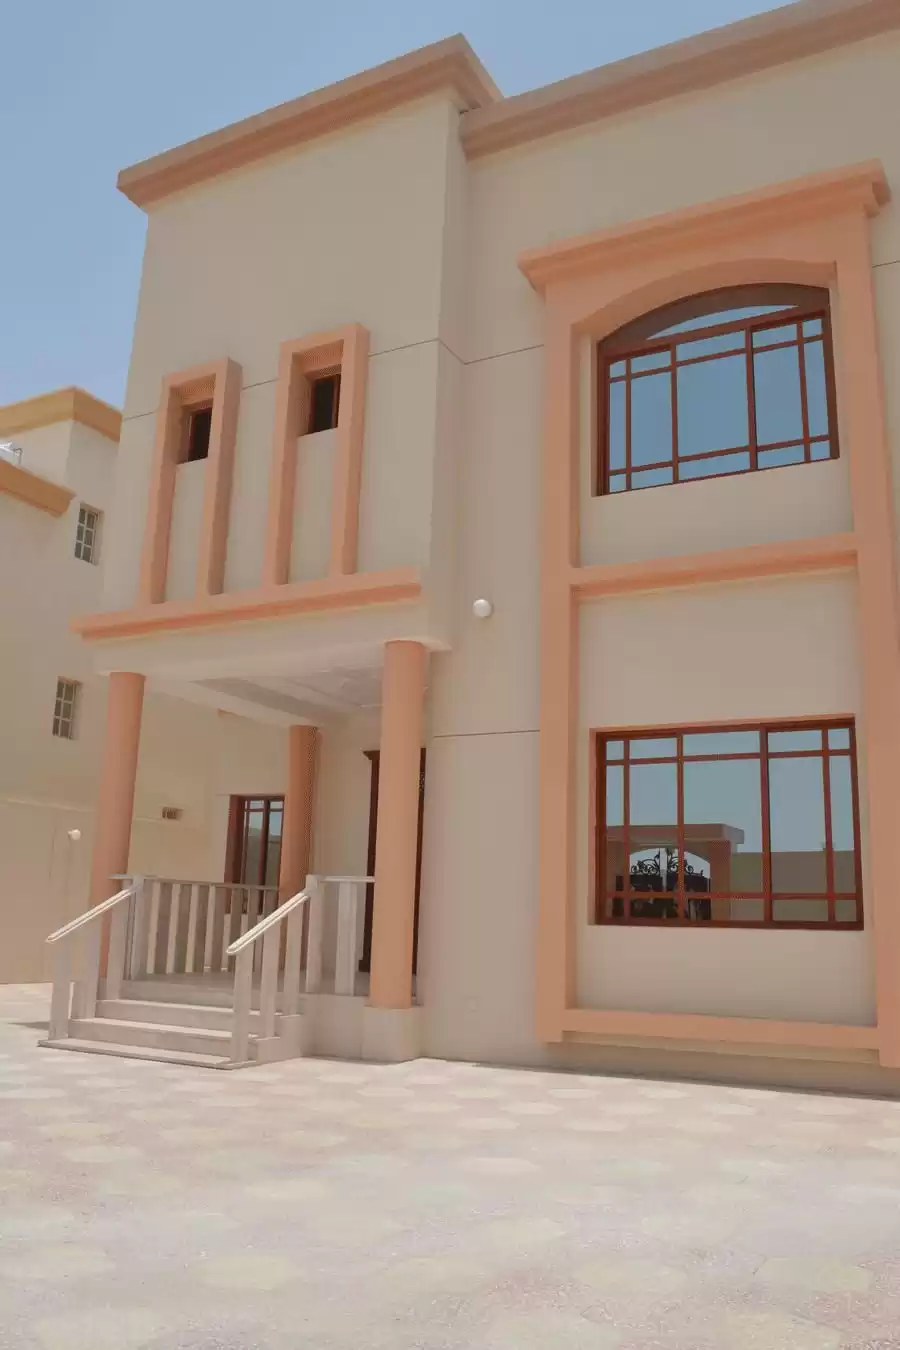 Résidentiel Propriété prête 6 chambres U / f Villa autonome  a louer au Al-Sadd , Doha #11952 - 1  image 